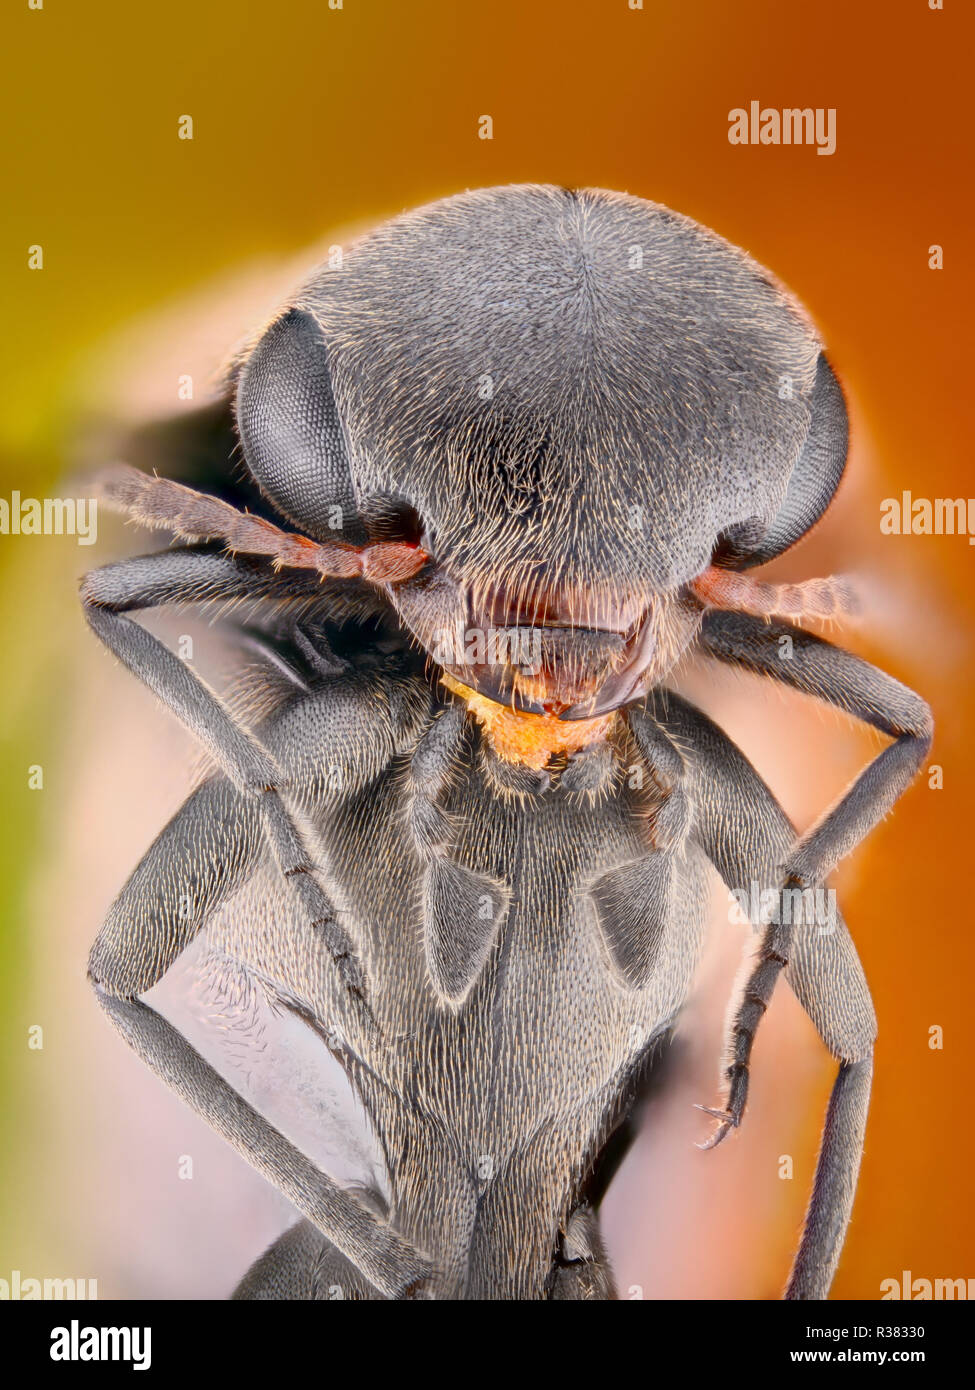 Extrem scharfe und detaillierte Studie über ein Insekt mit einem Mikroskop Ziel genommen. Das Bild wird von vielen Schüsse in die ein scharfes Bild gestapelt. Stockfoto